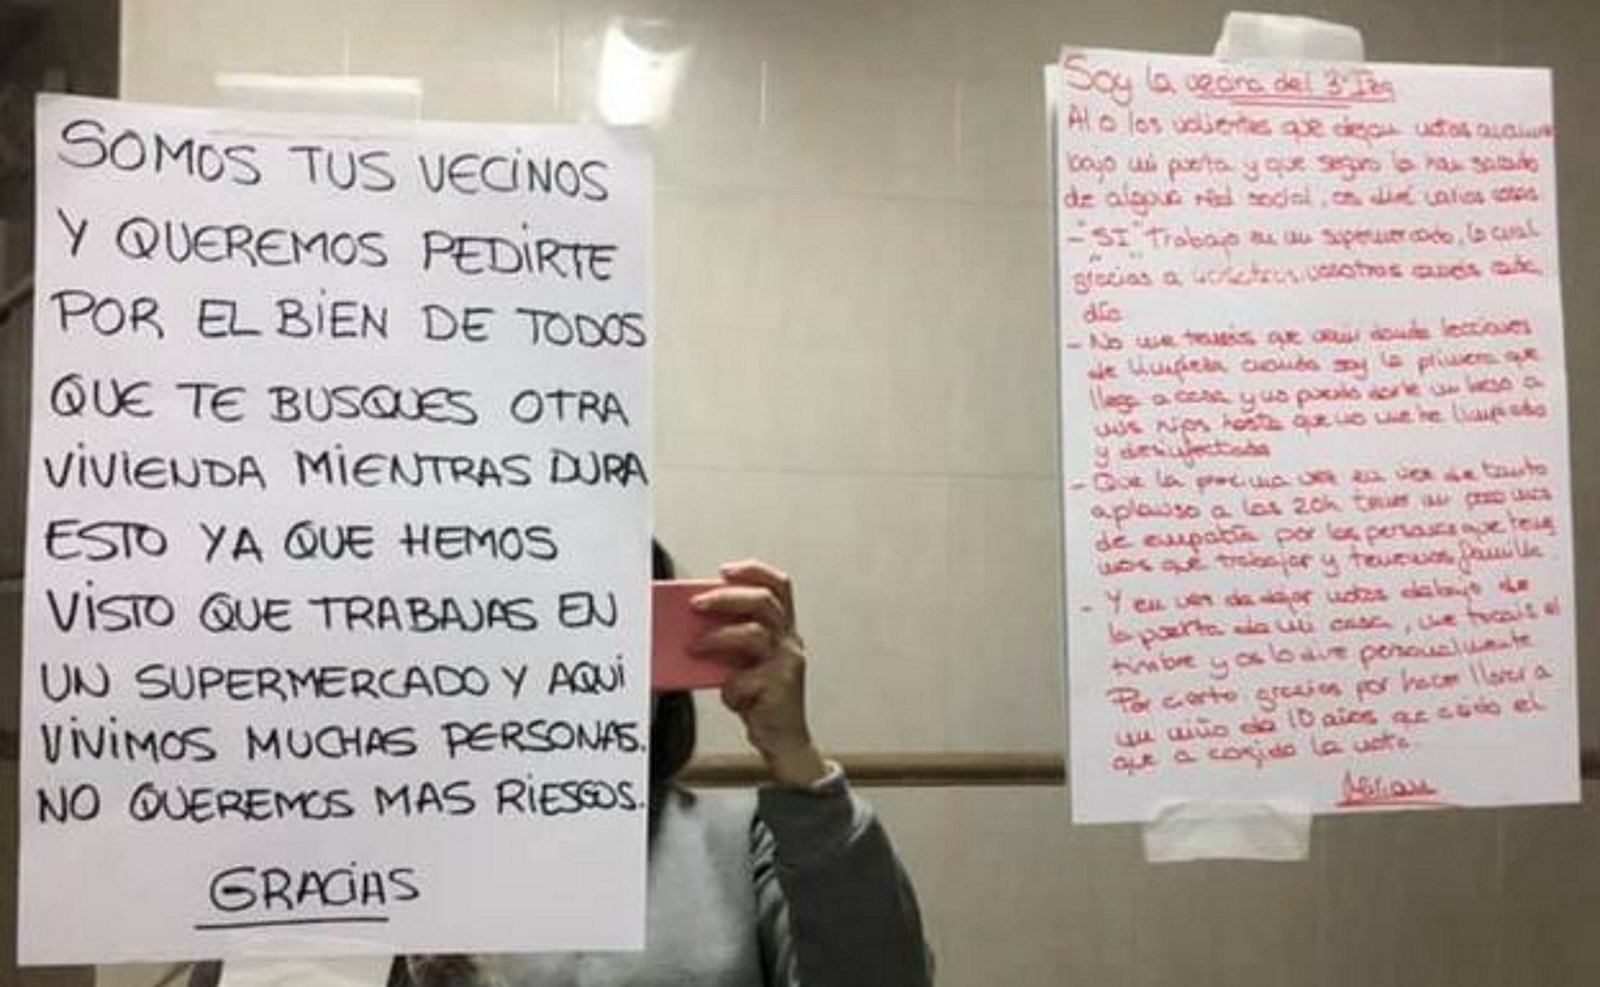 FOTOGRAFÍA. ESPAÑA, MARZO Y ABRIL DE 2020. Mensajes y carteles amenazantes contra los profesionales sanitarios o personas como comerciantes. Ñ Pueblo (4)